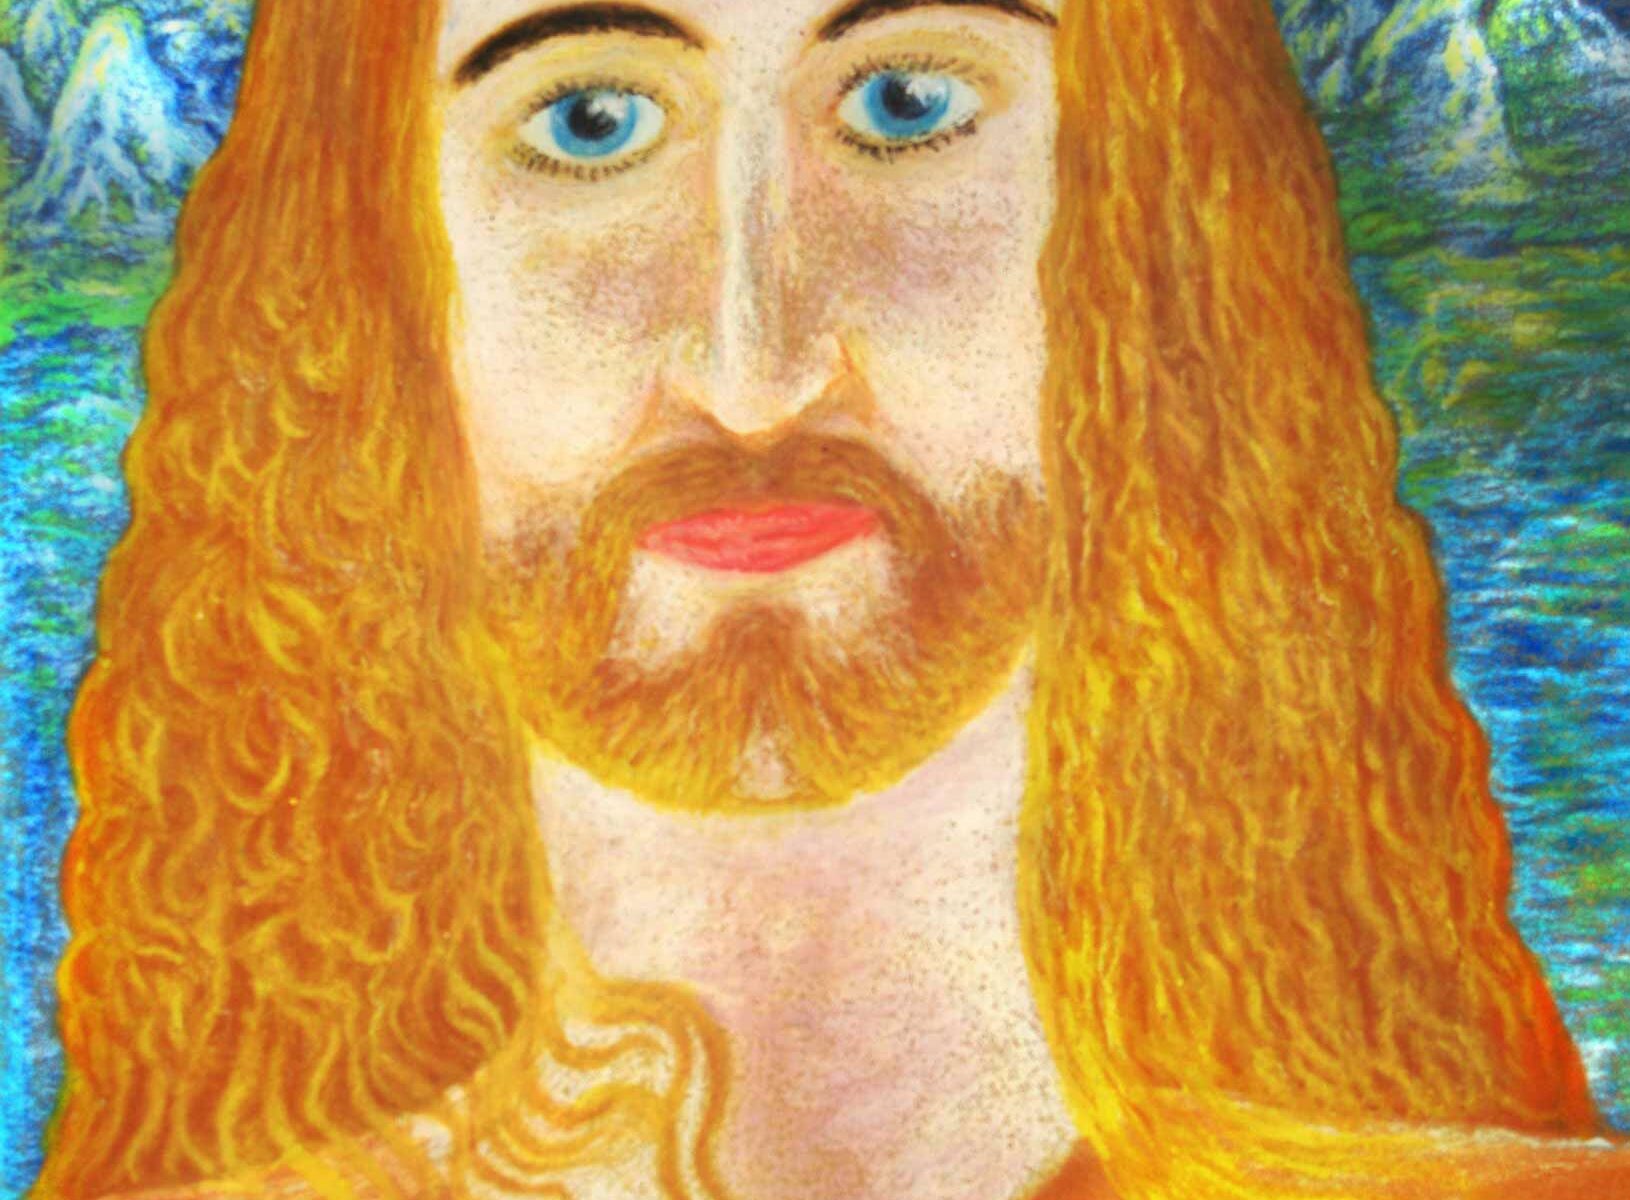 Jesusporträt, 1983, Ölpastell auf Ölpastellpapier